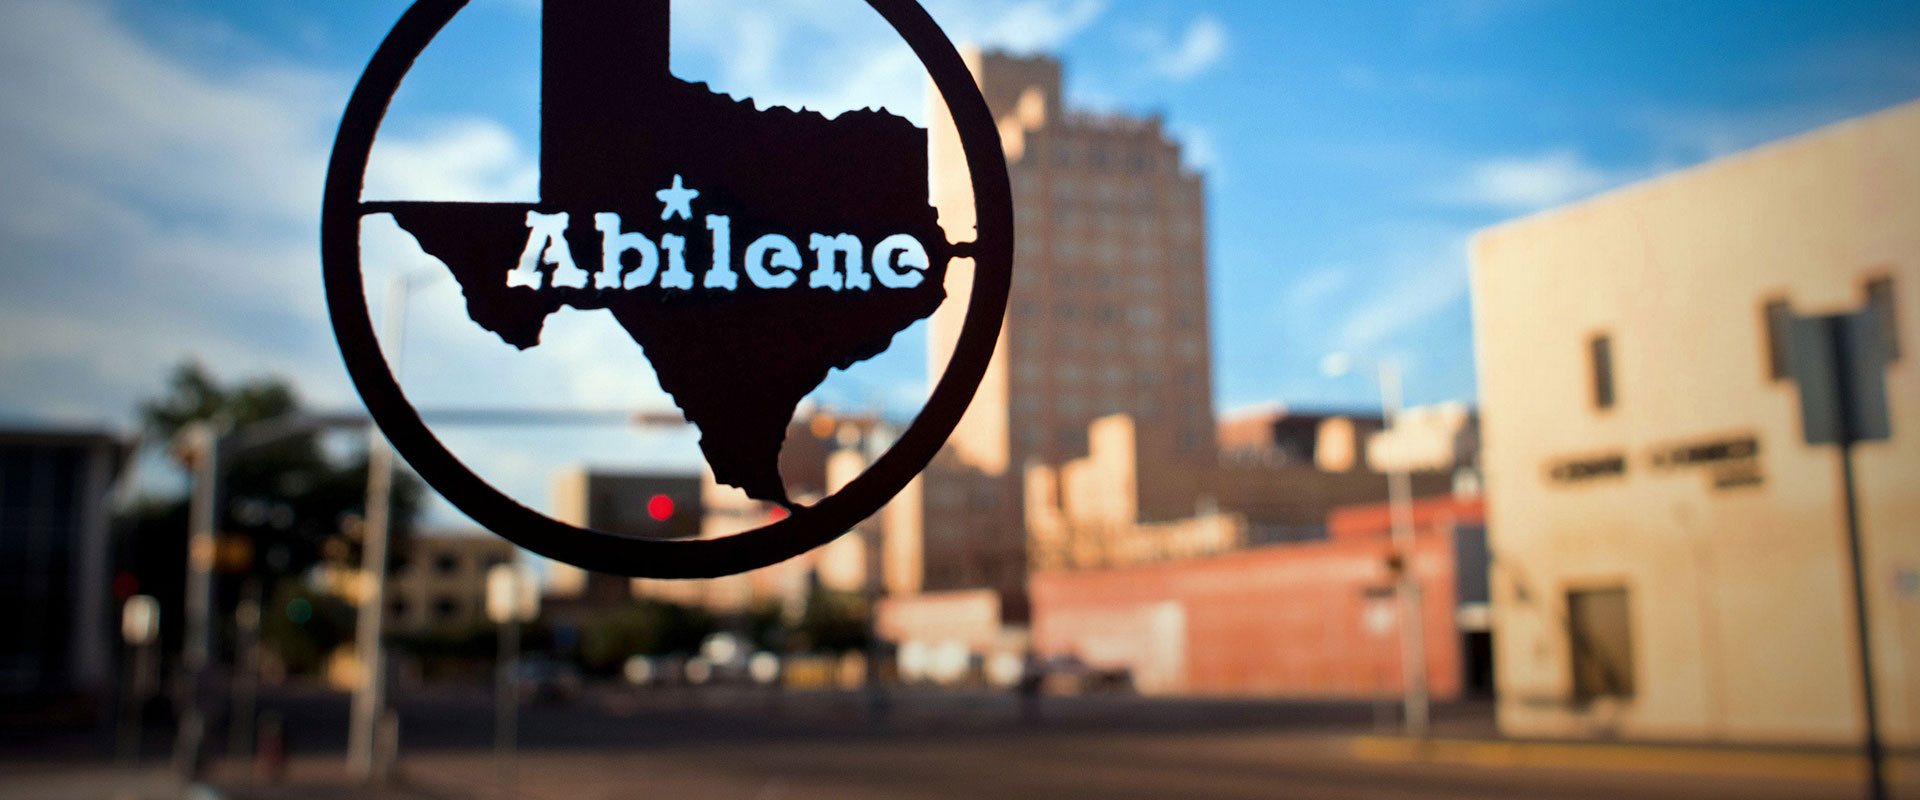 Abilene Center City, Abilene, TX